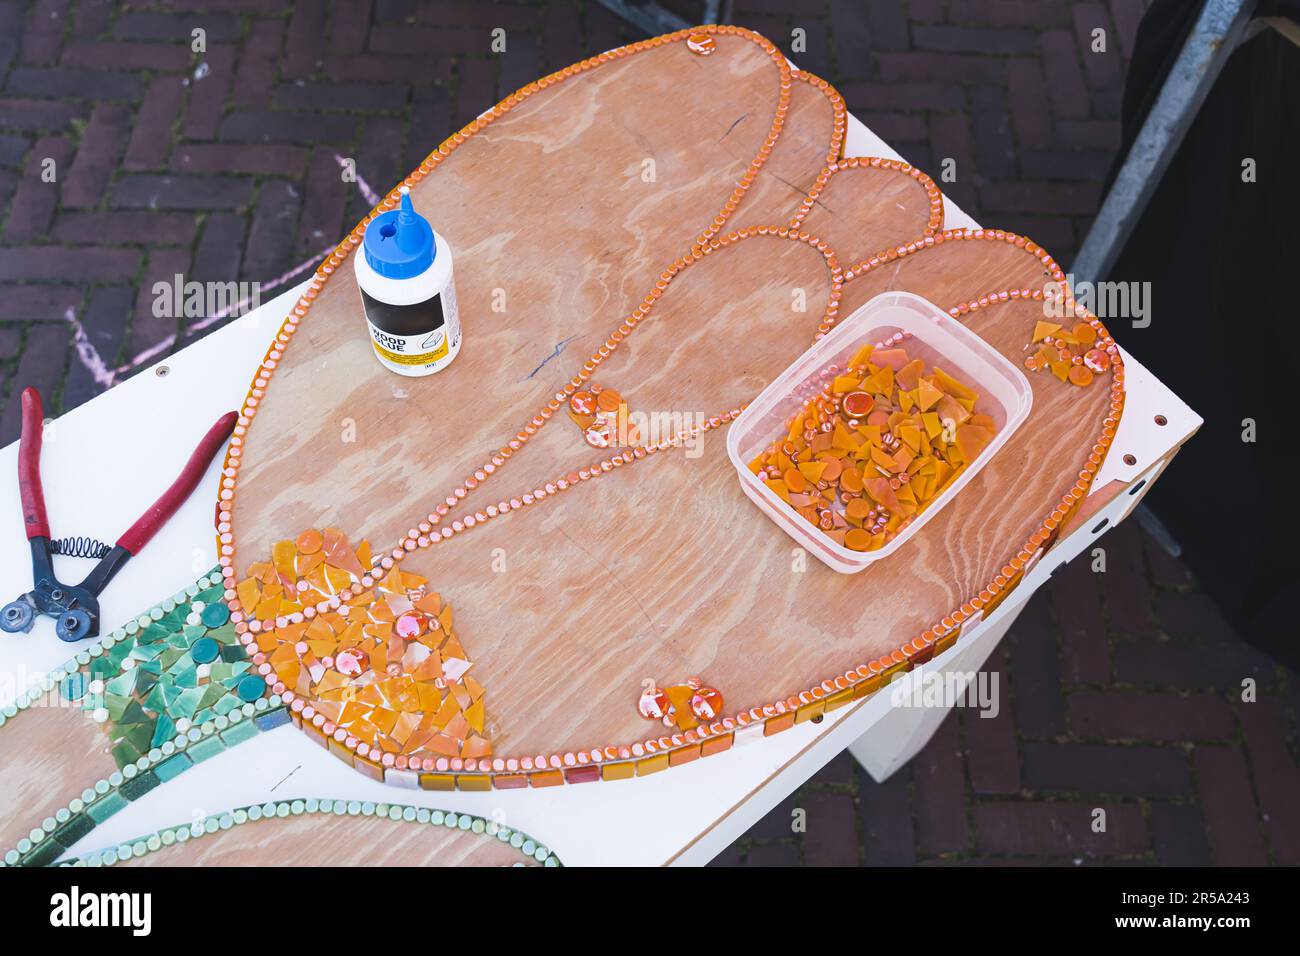 Atelier d'art recyclé dans la ville hollandaise - Hillegom. Vue en grand angle de la fleur de tulipe en bois décorée de morceaux de verre recyclé orange et vert. Personne. Photo de haute qualité Banque D'Images